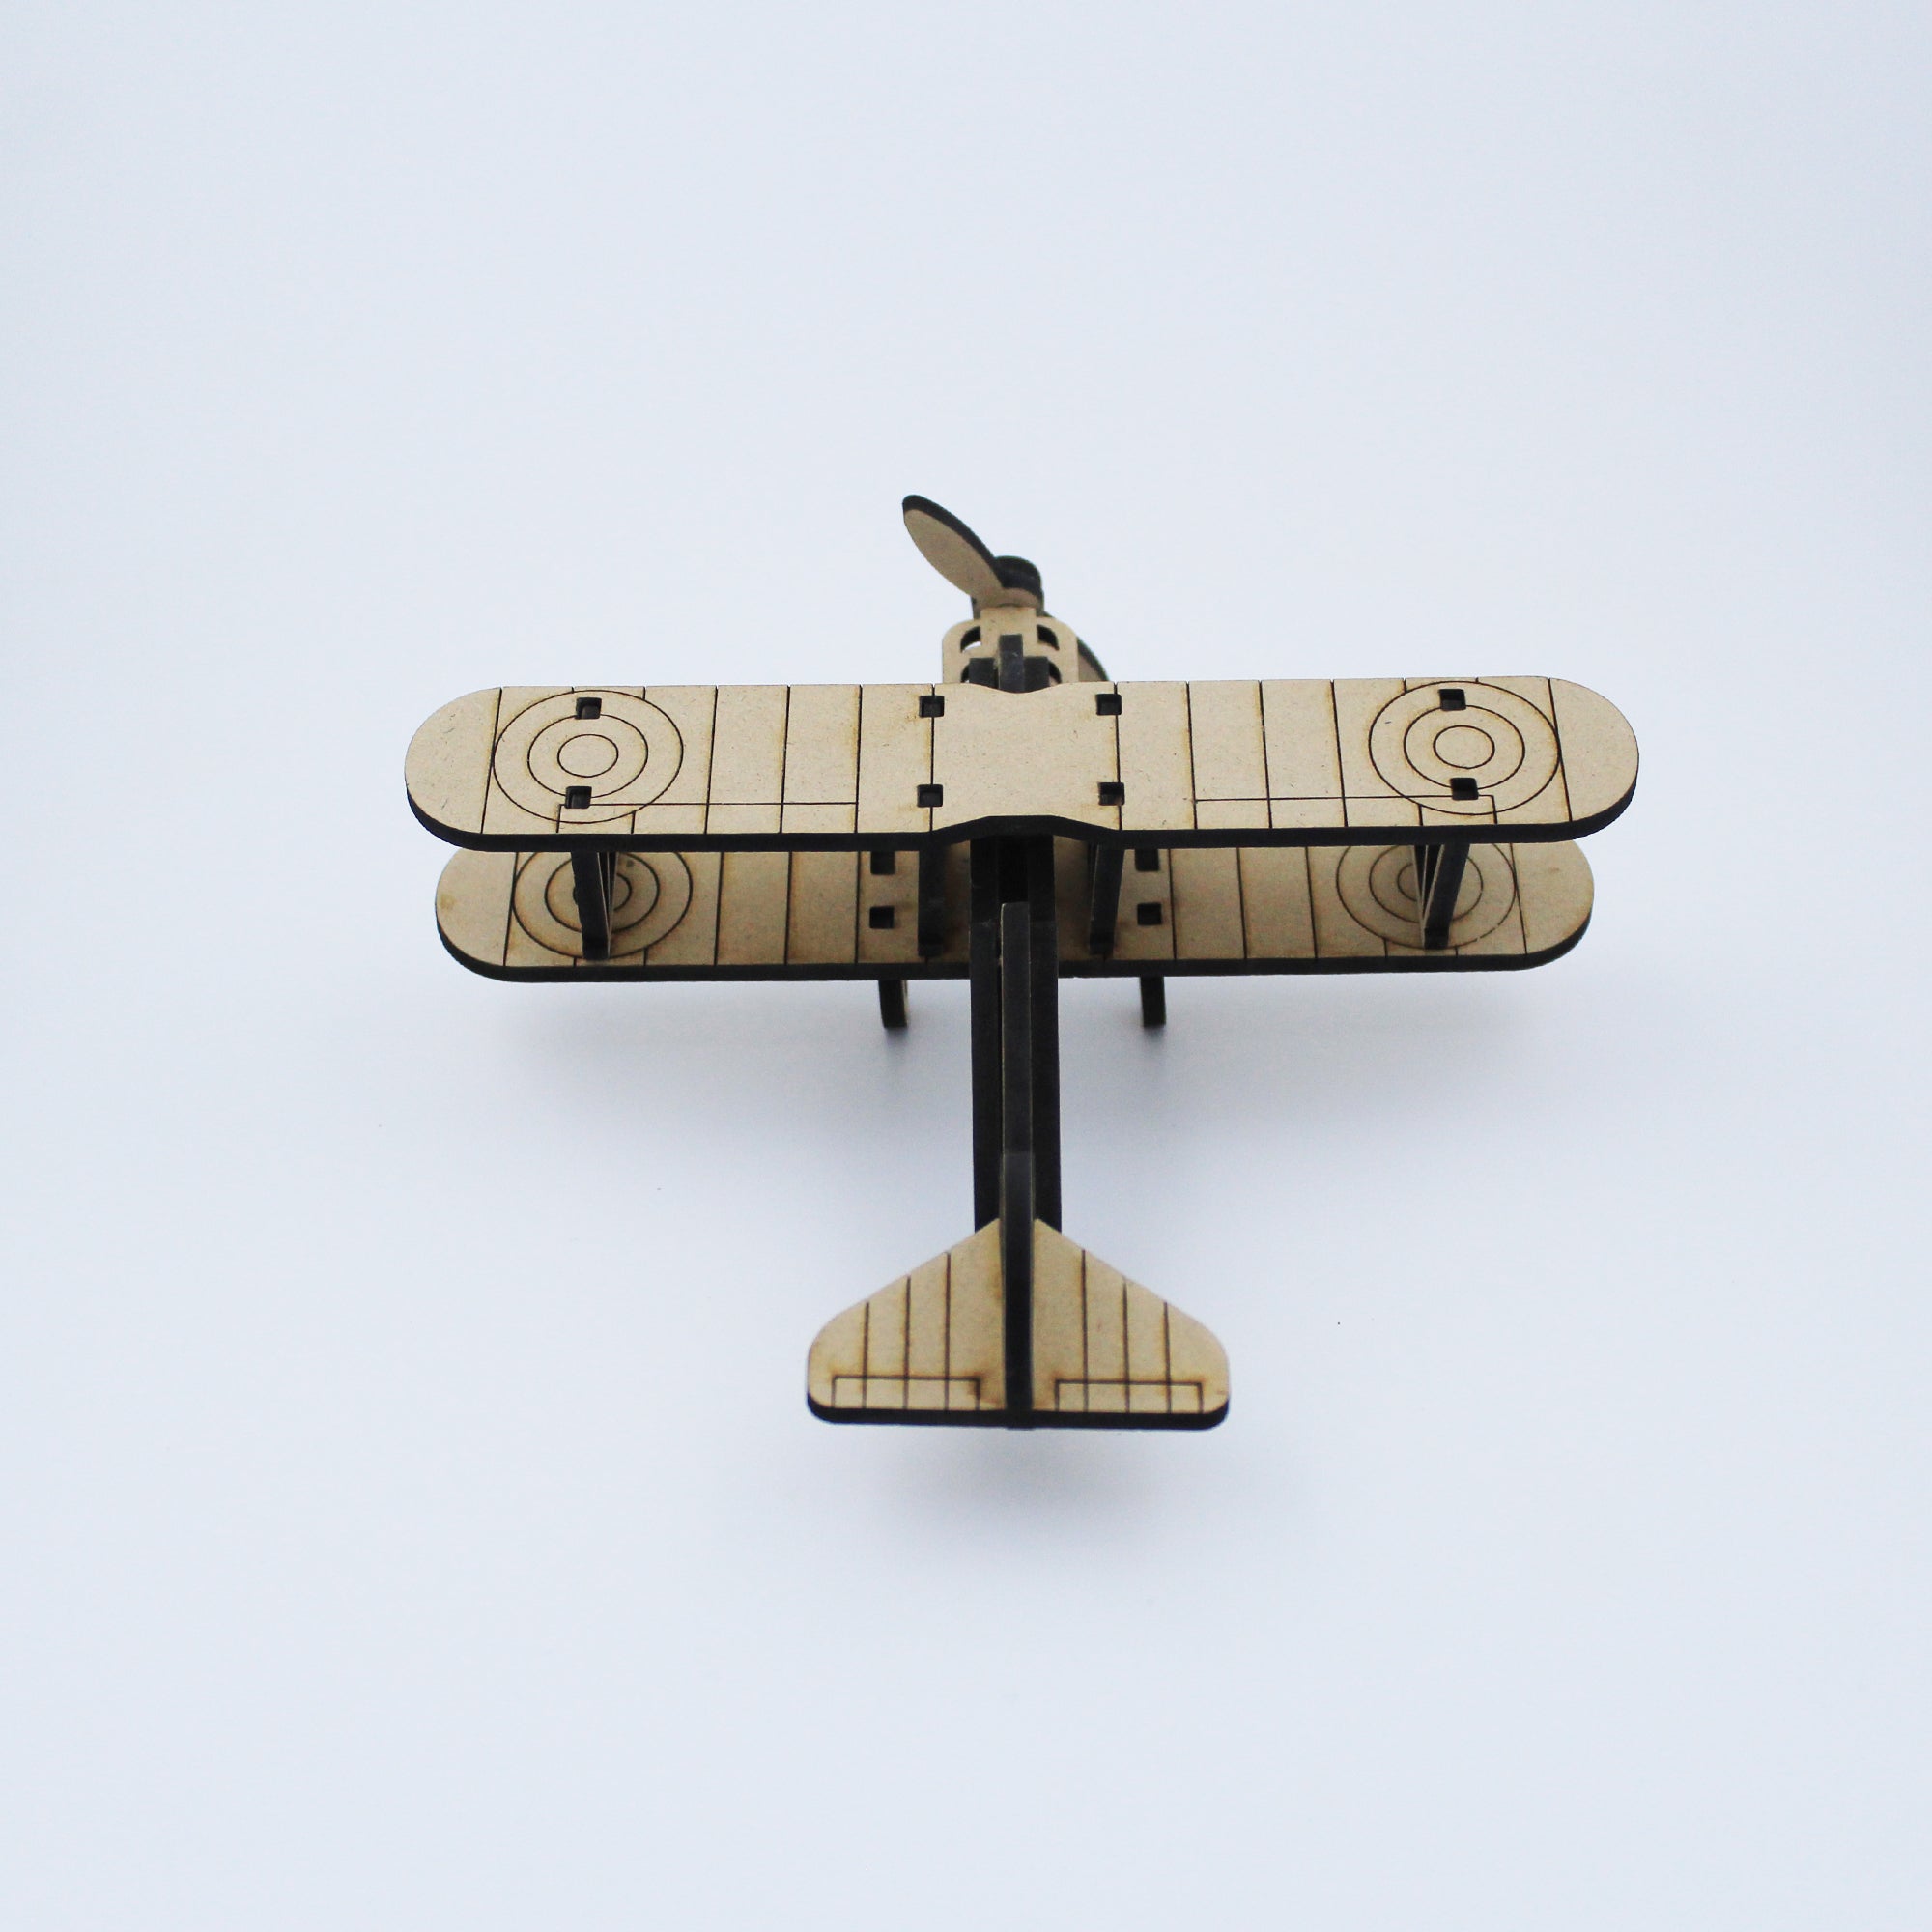 3D Glider Plane Puzzle Toy (DIY)